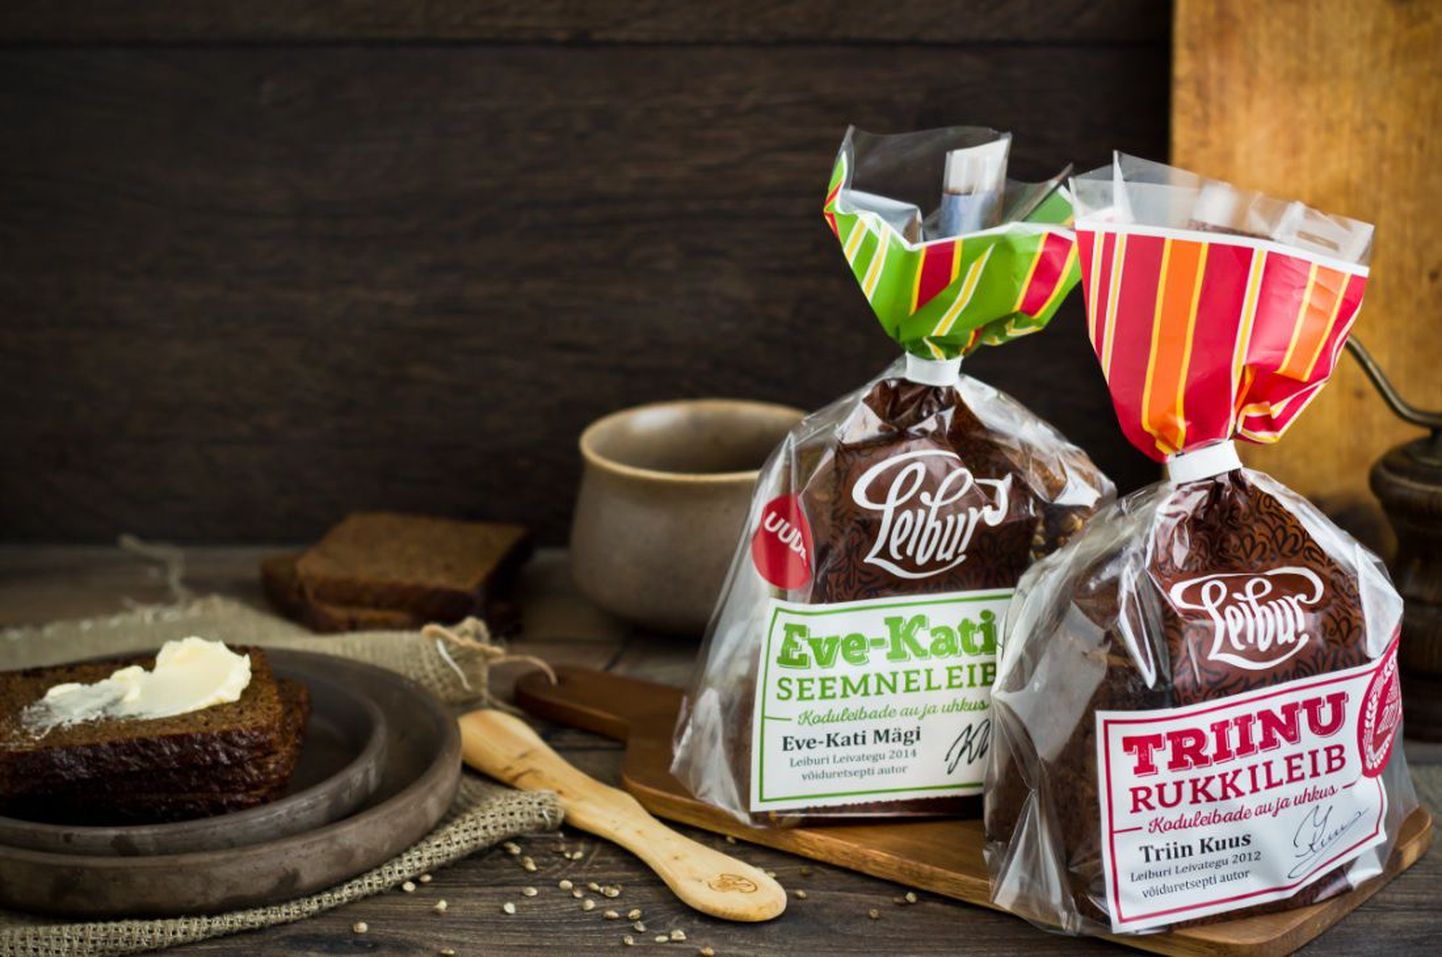 Esimese leivakonkursi võiduleivaks osutus Triinu rukkileib, eelmisel aastal aga Eve-Kati seemneleib.